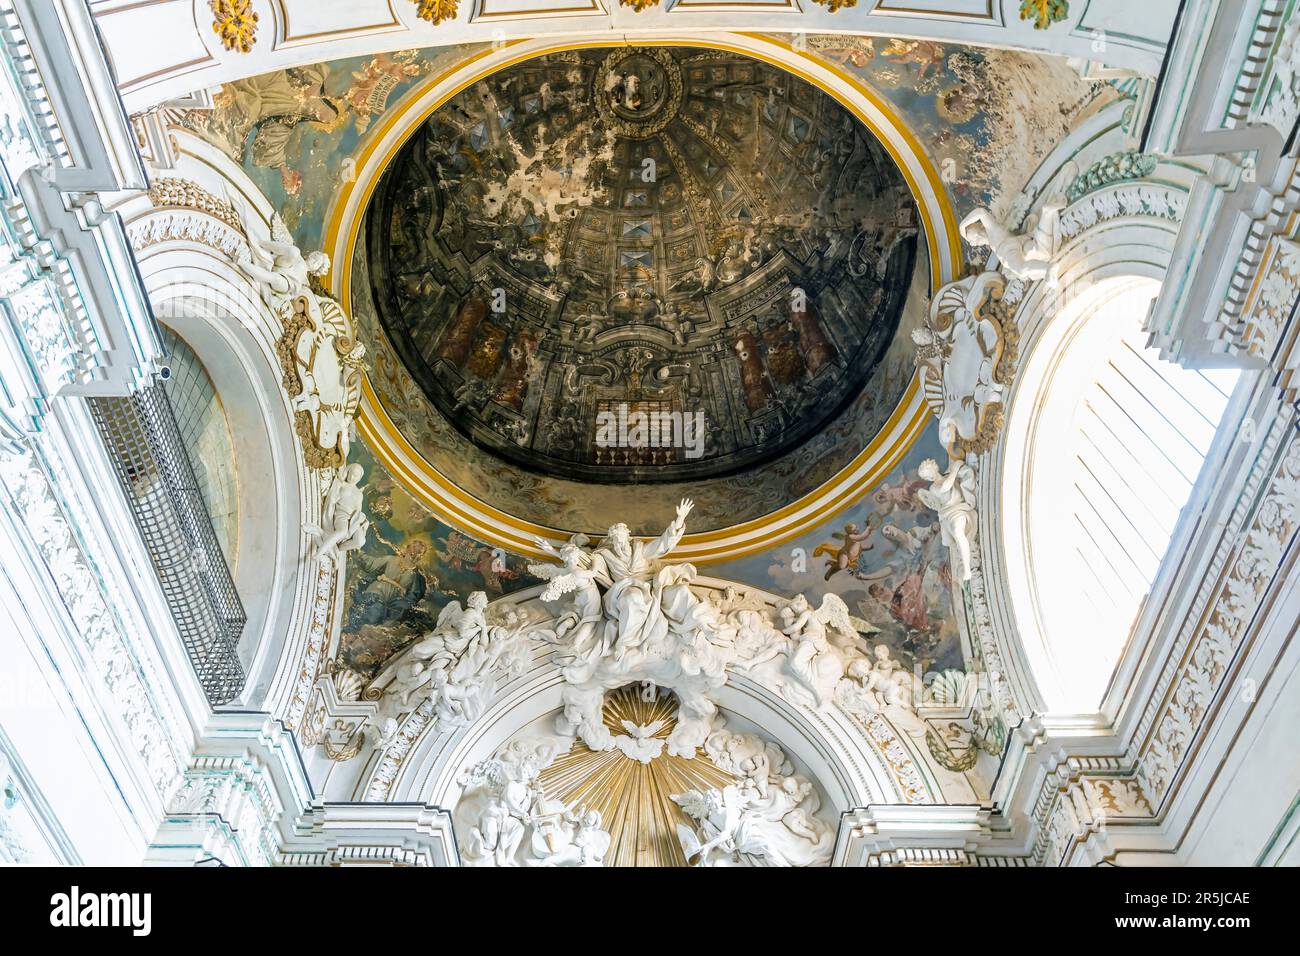 Peintures murales dans le dôme du plafond. Monastère cistercien de l'Esprit Saint (Santo Spirito) à Agrigento, Italie. Banque D'Images